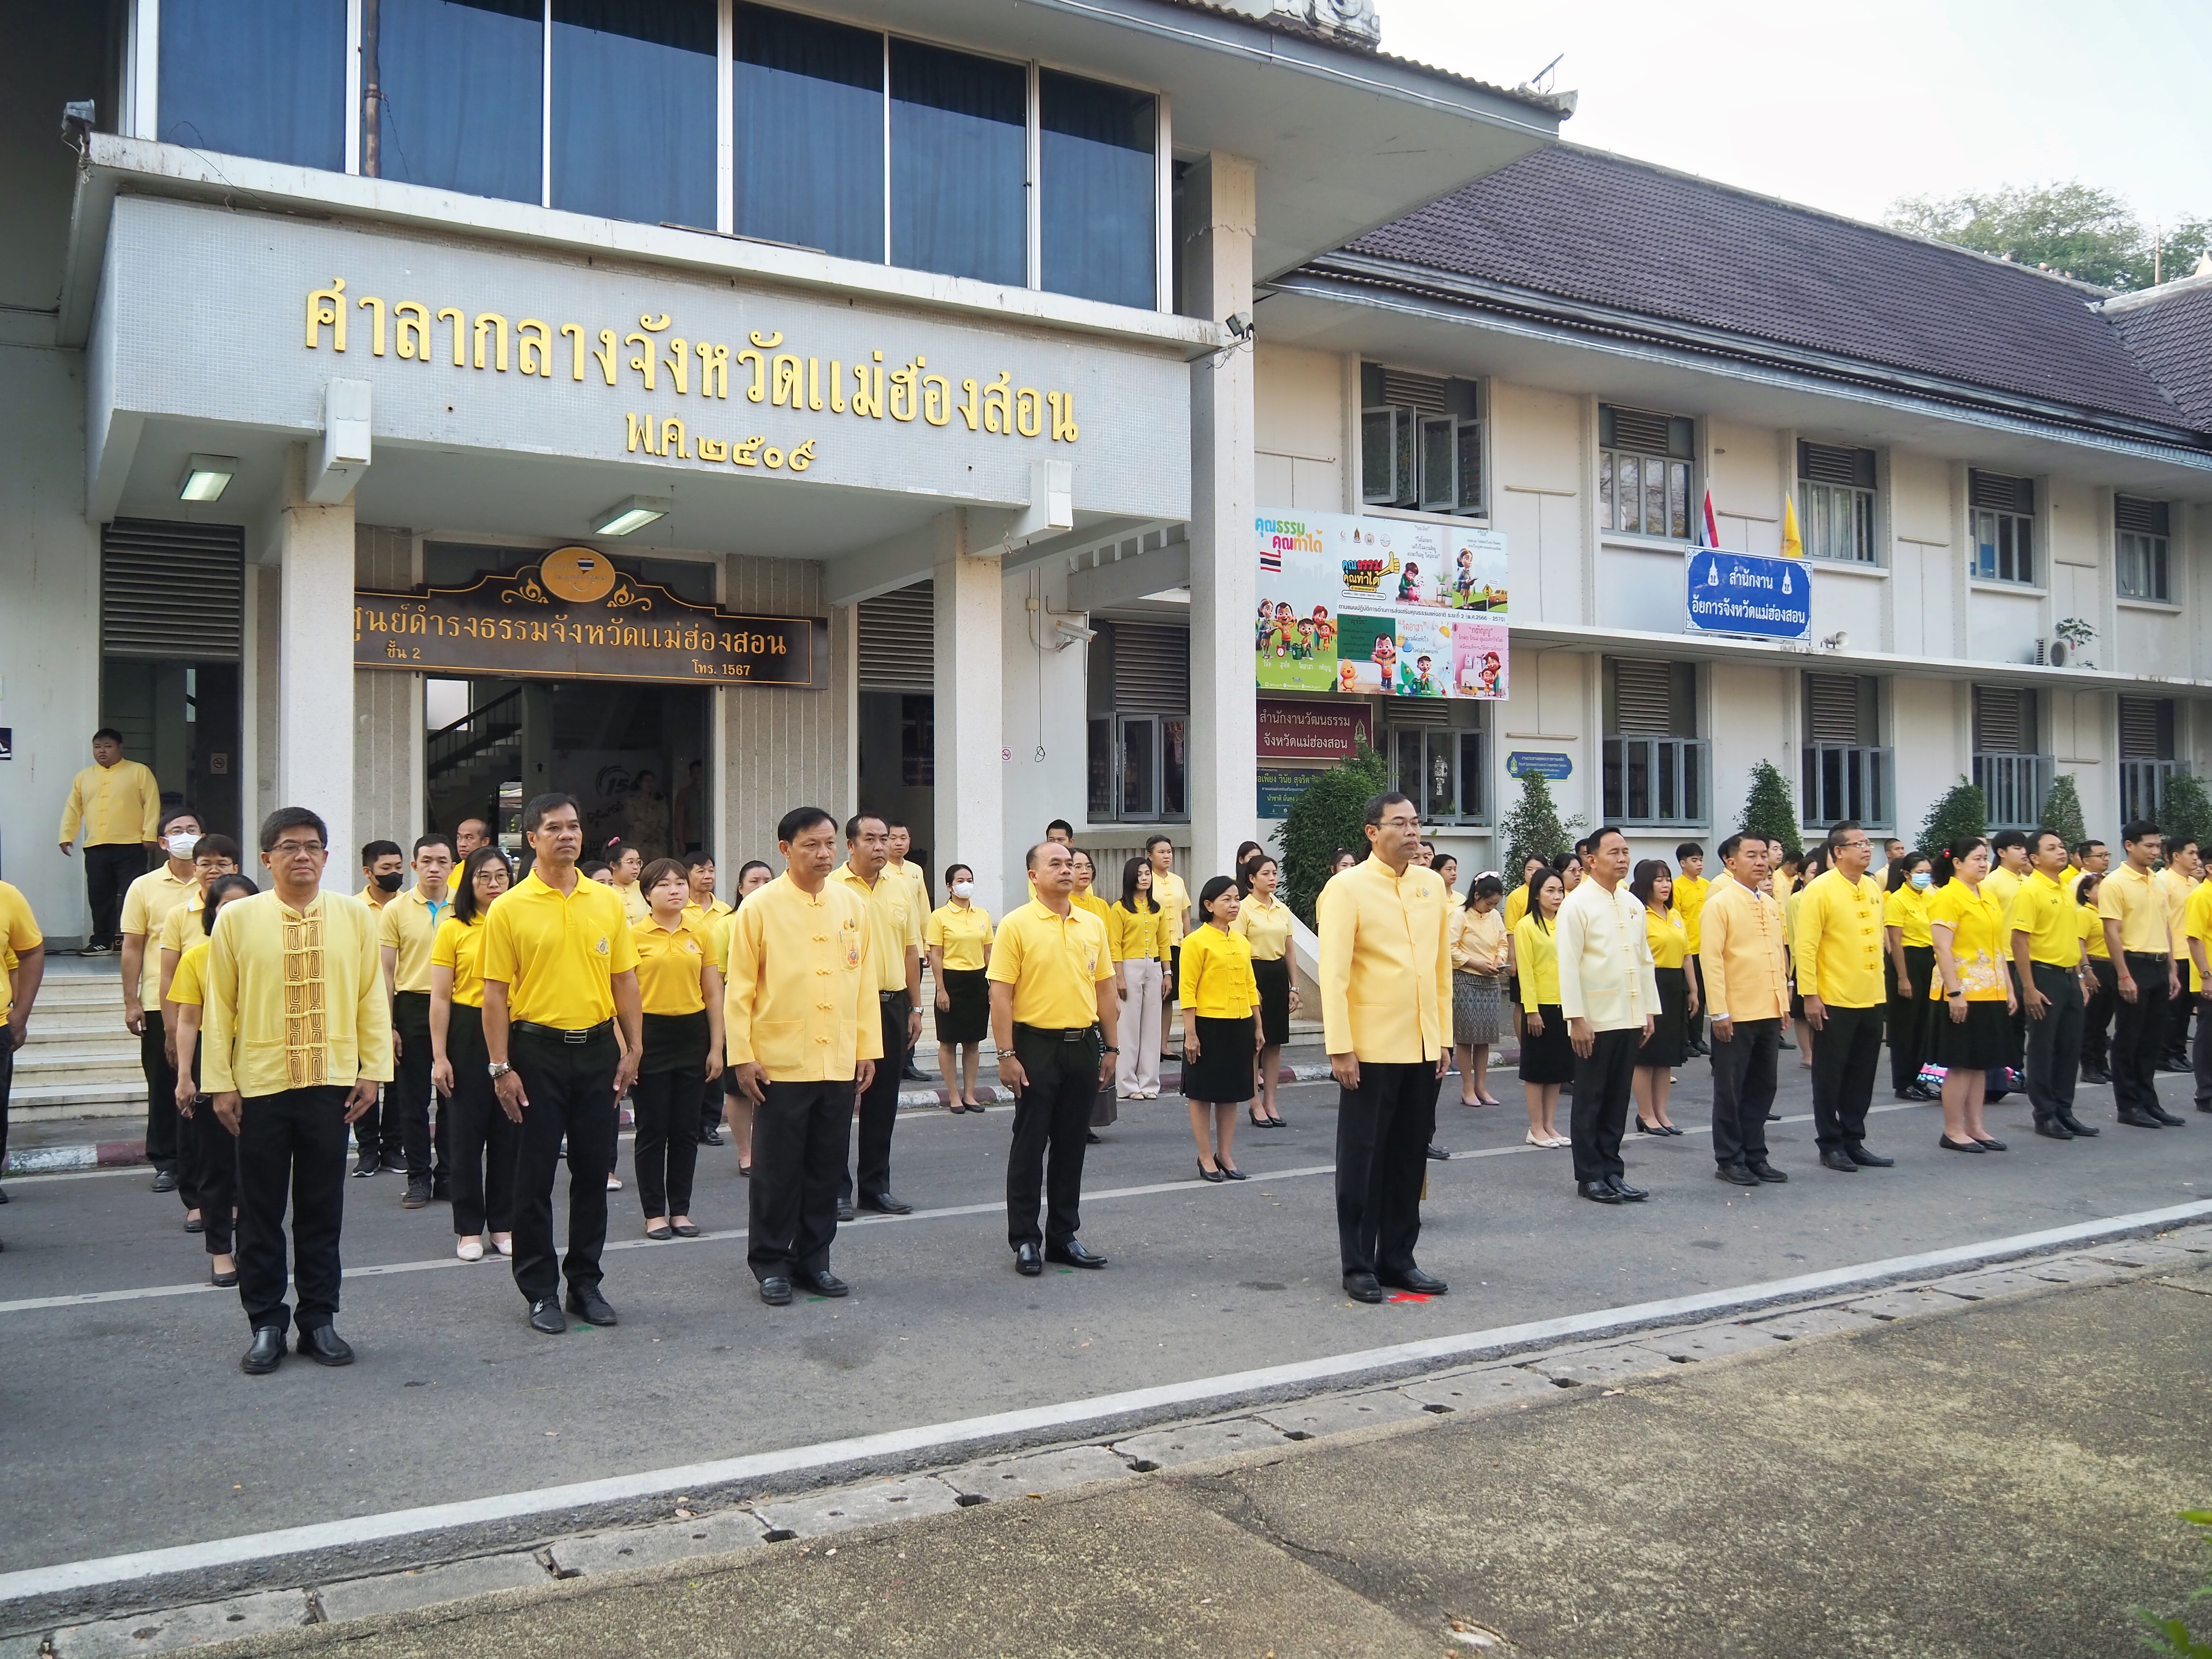 ผู้ว่าราชการจังหวัดแม่ฮ่องสอนนำเหล่าข้าราชการร่วมกิจกรรมเคารพธงชาติและร้องเพลงชาติไทย เพื่อสร้างความภาคภูมิใจของคนในชาติ 